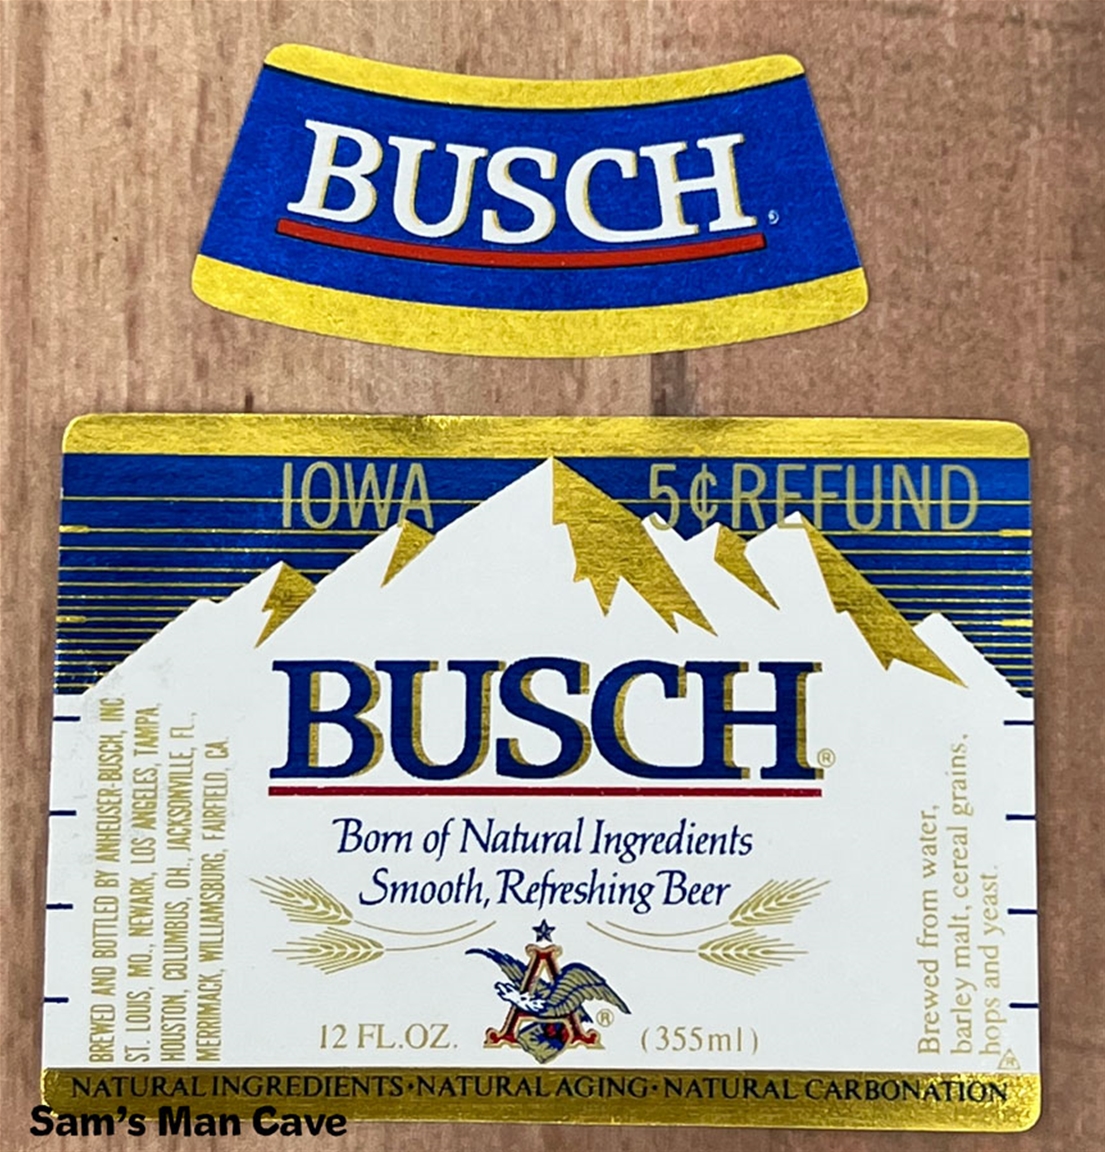 Busch Iowa Refund Beer Label with neck